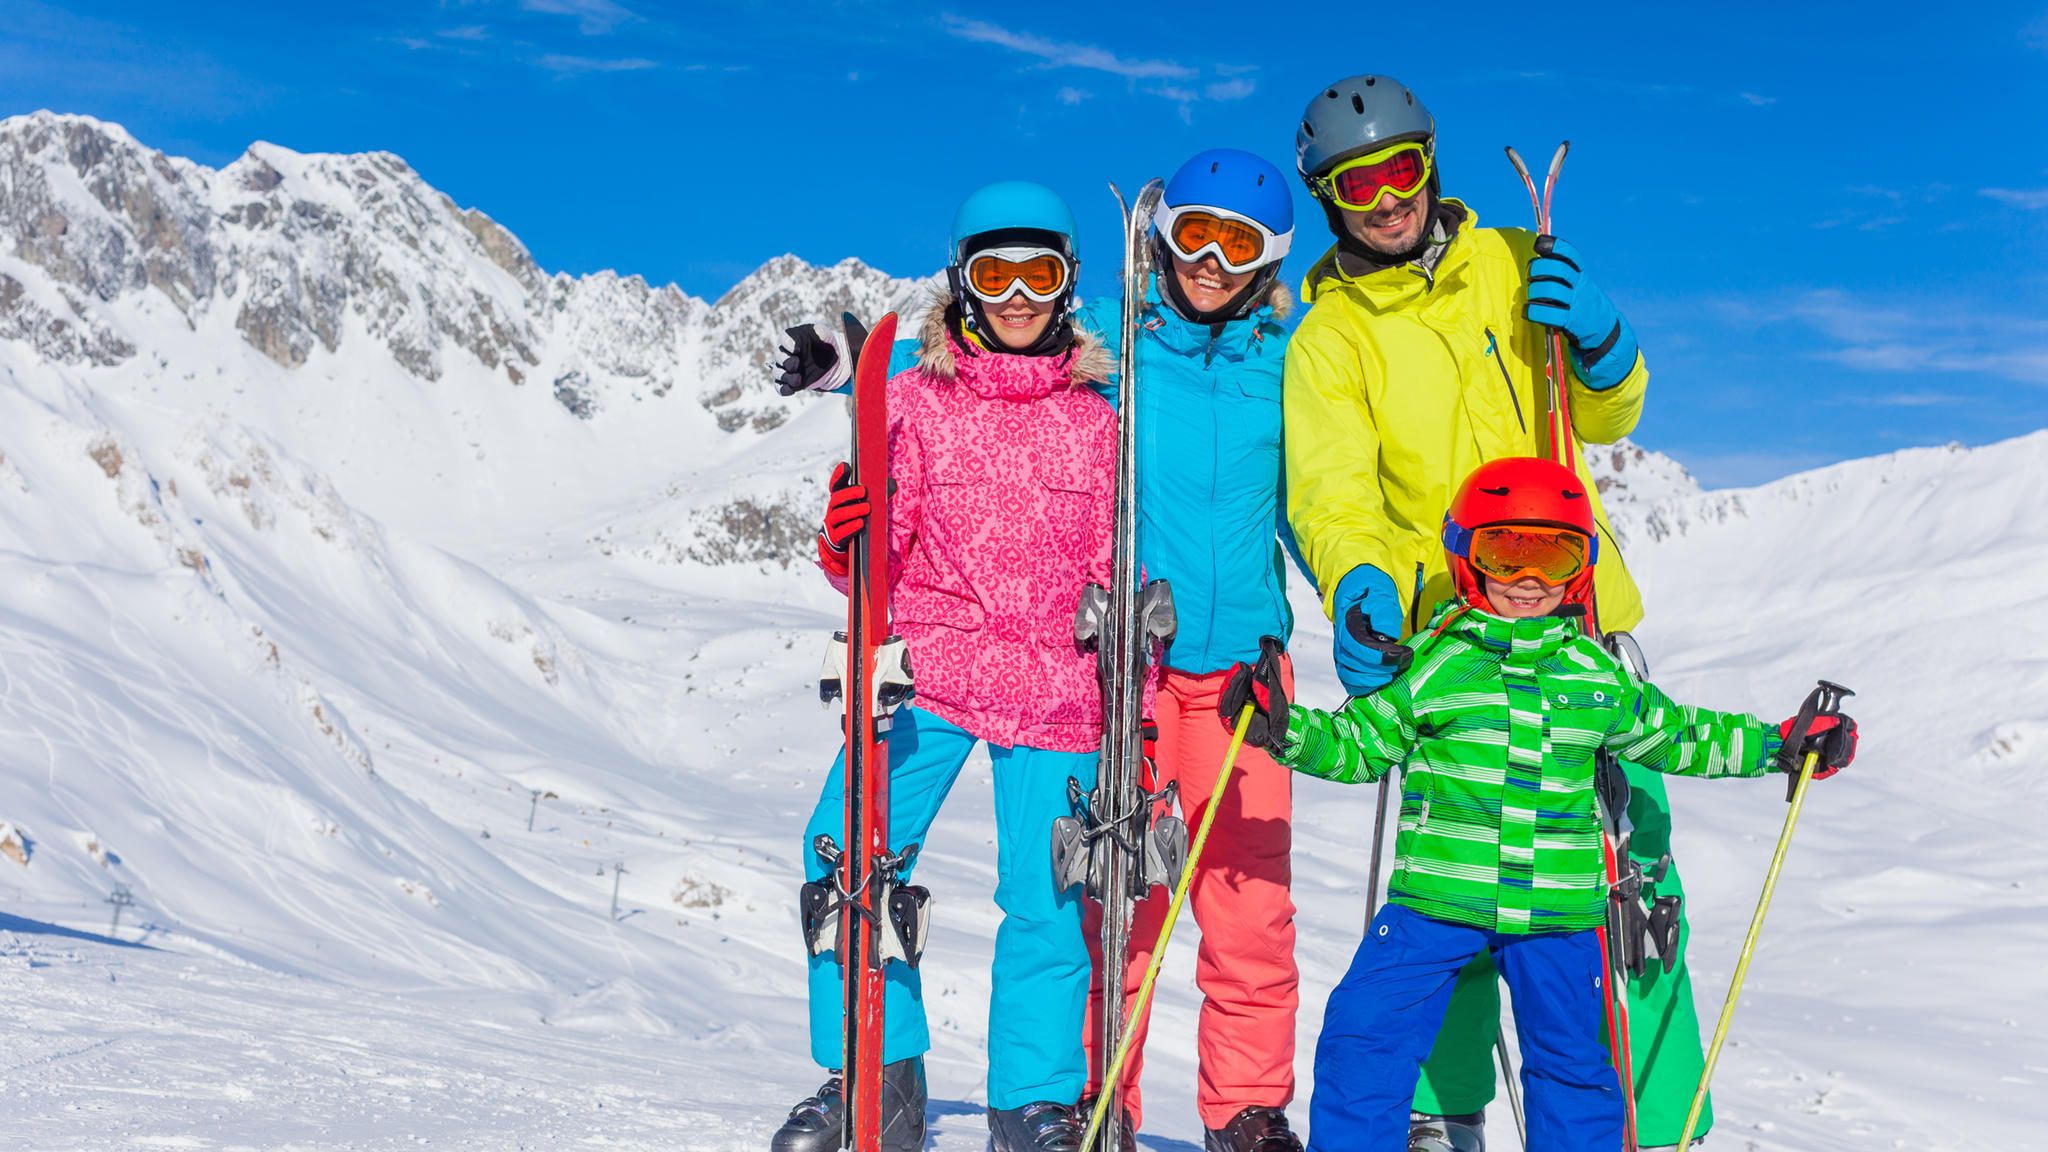 Skiurlaub, Skireisen und Winterurlaub - alles zum Thema Wintersport,  Skifahren und Snowboarden